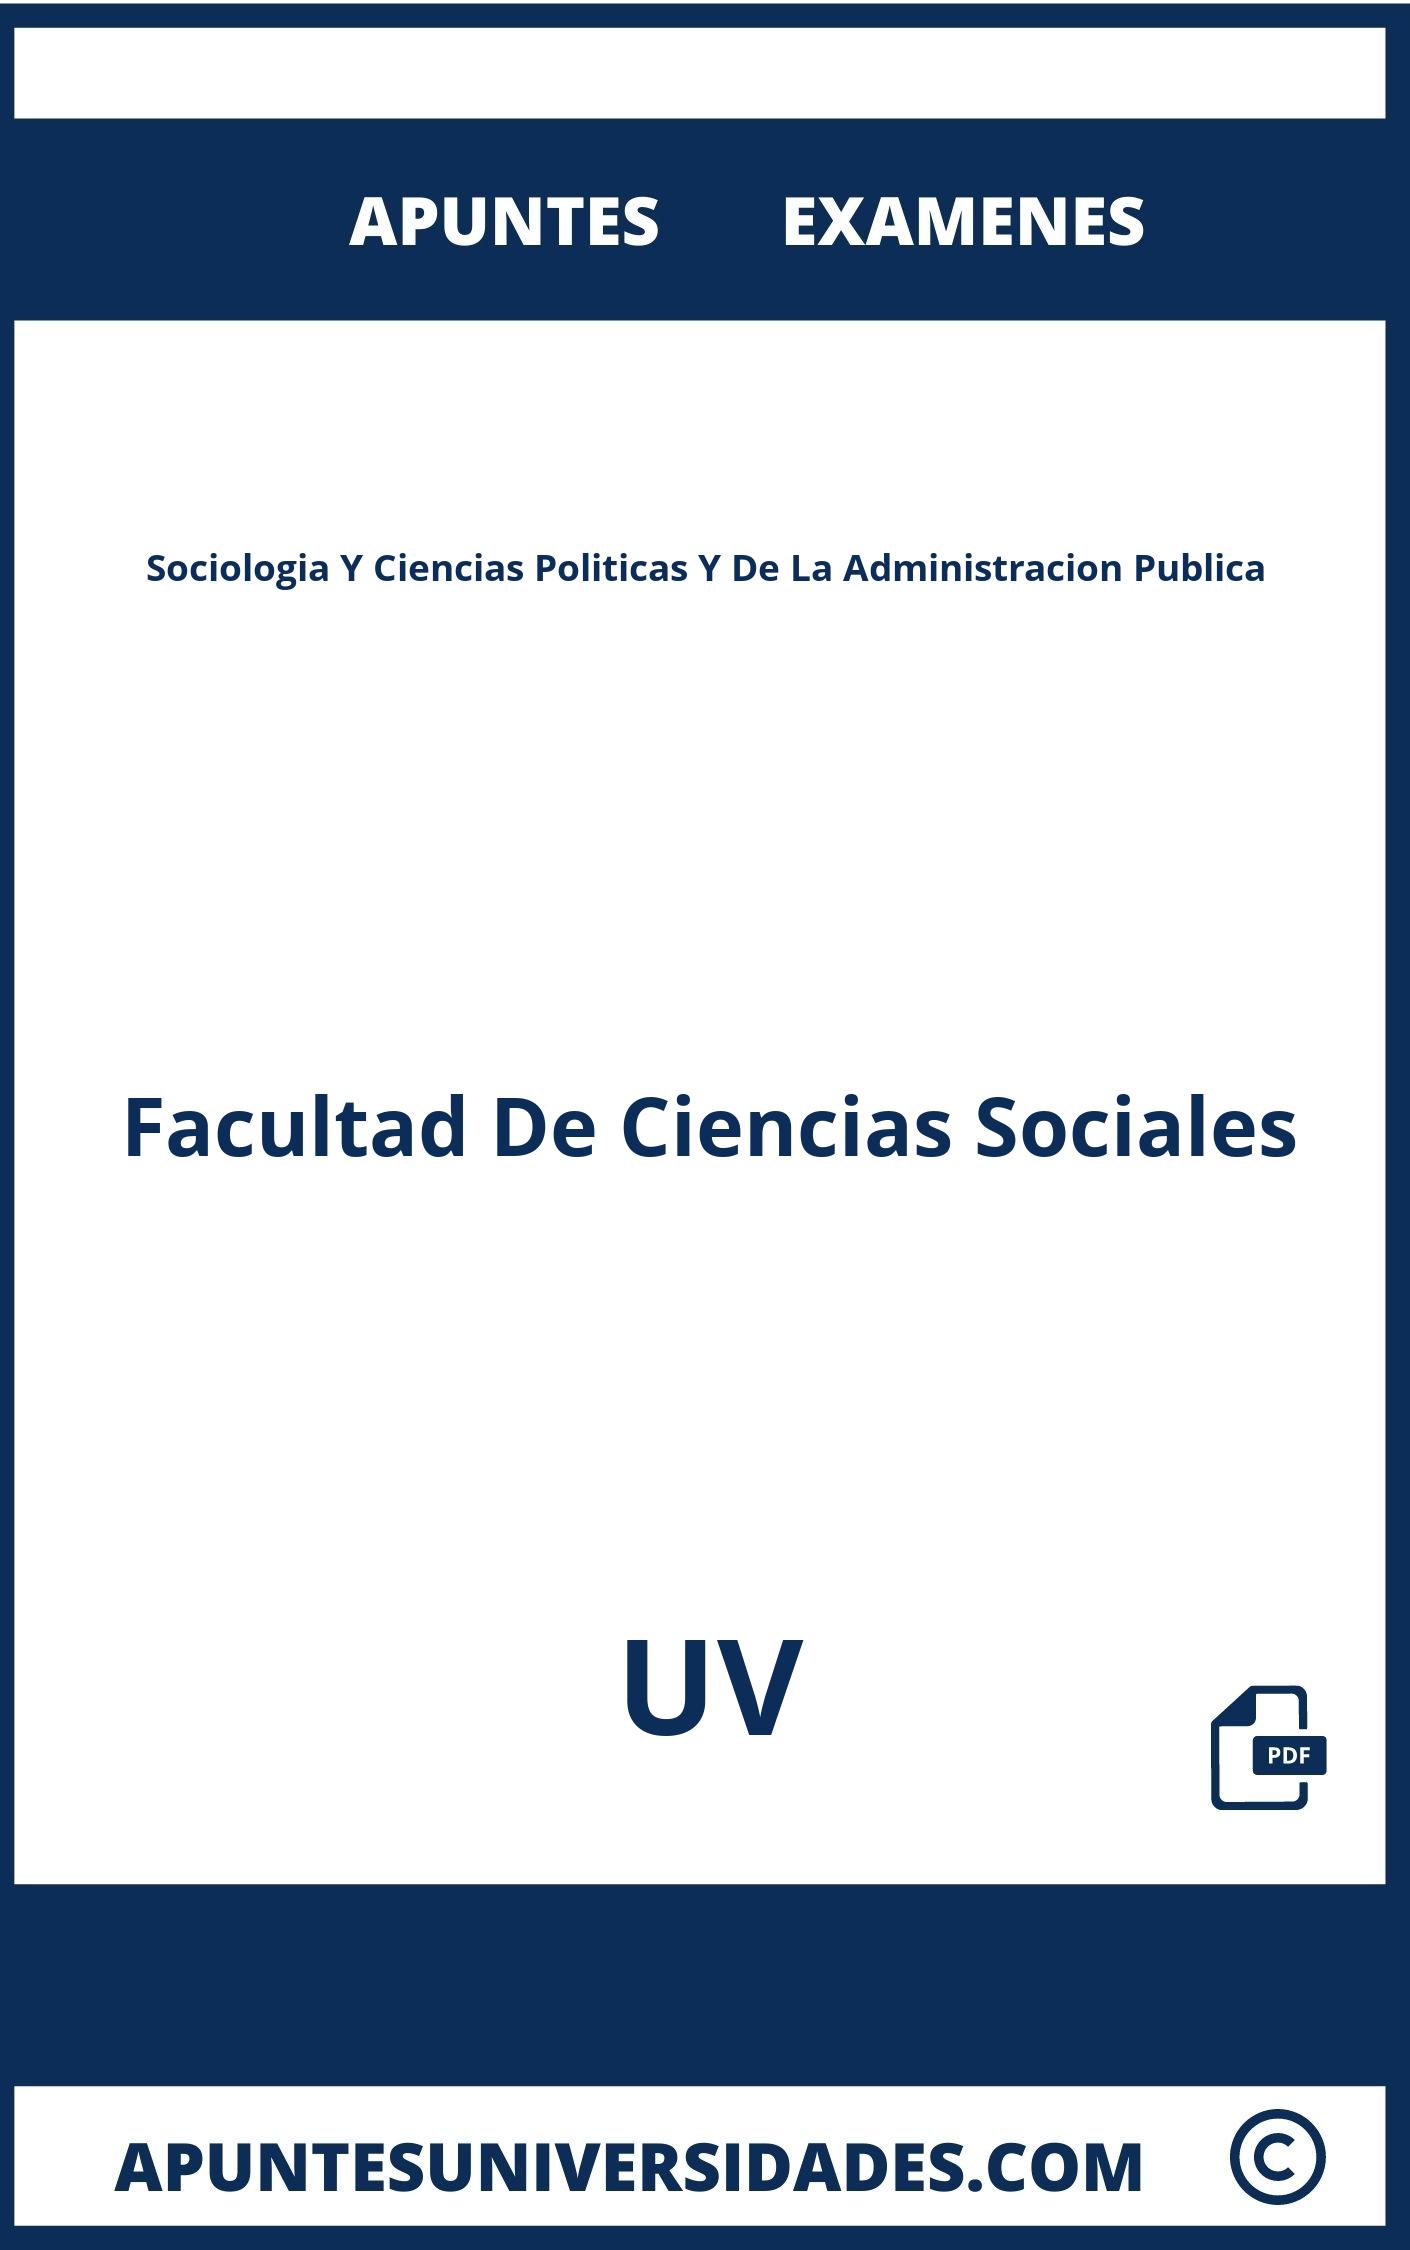 Examenes y Apuntes Sociologia Y Ciencias Politicas Y De La Administracion Publica UV